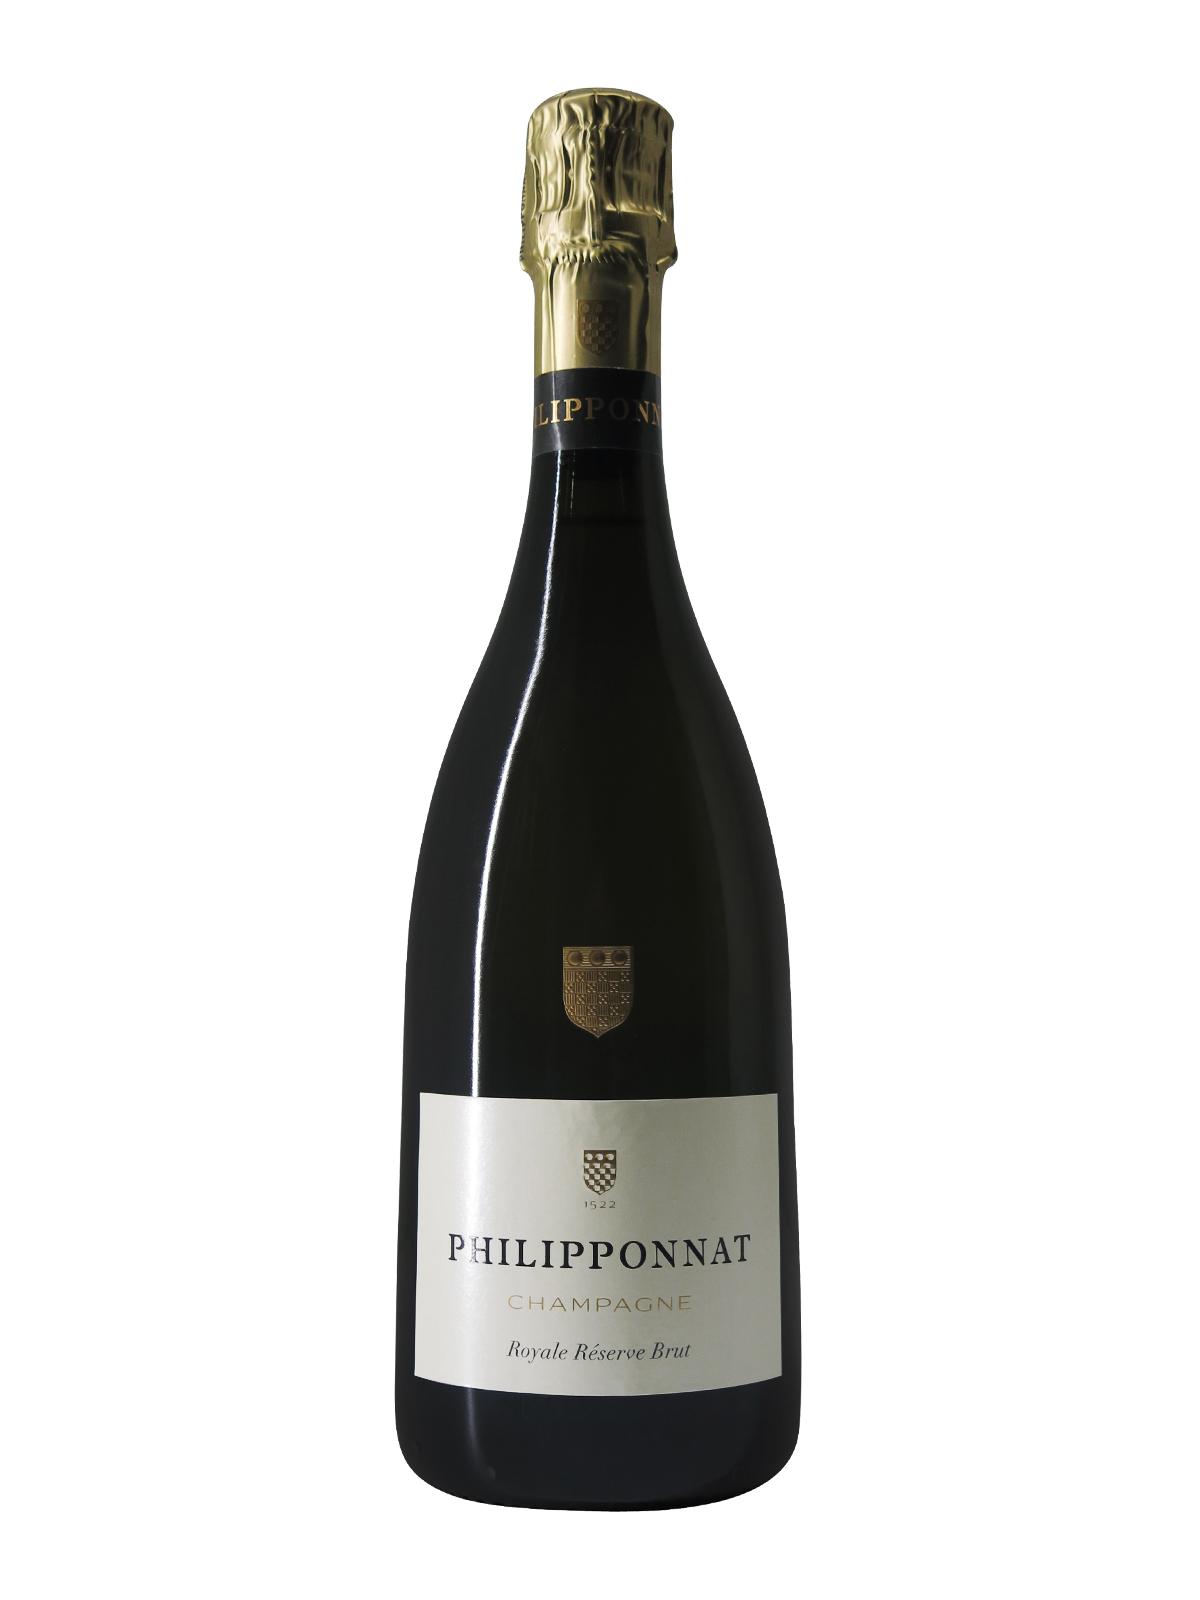 Lire la suite à propos de l’article Champagne Philipponnat – Royale réserve Brut